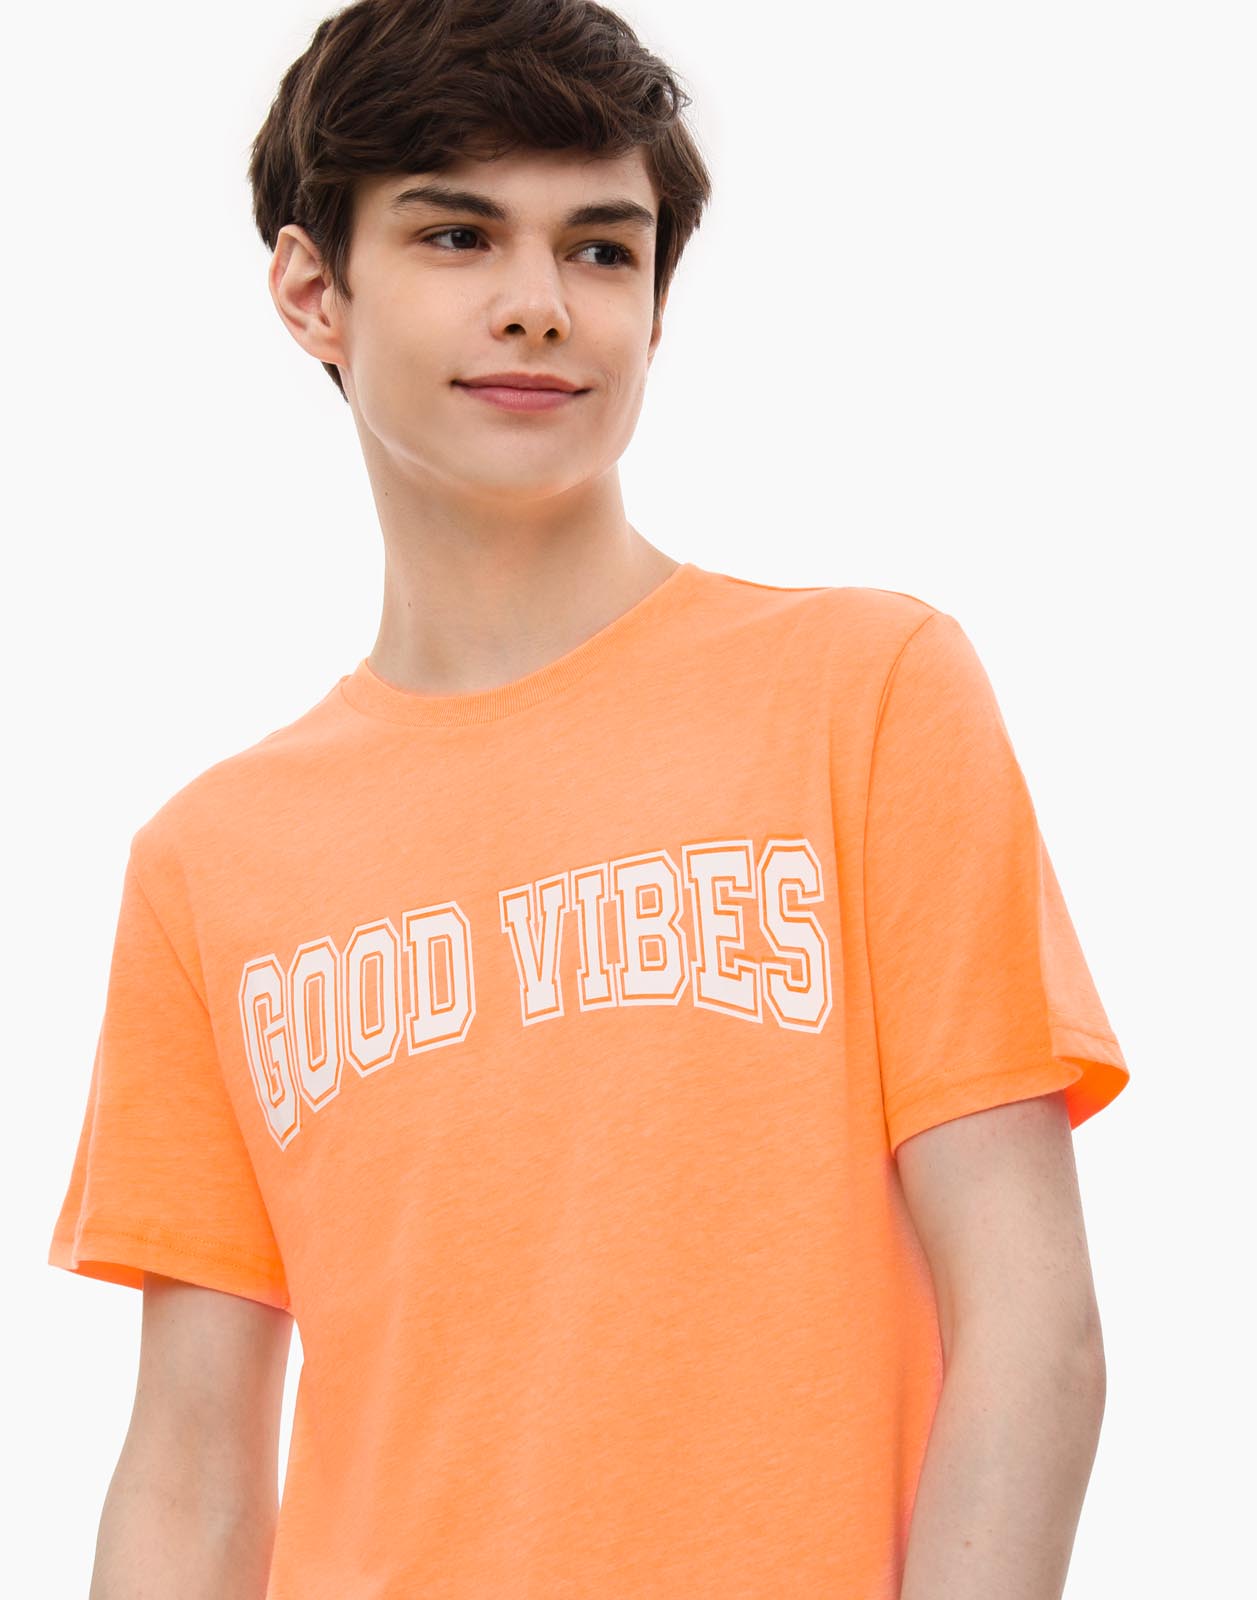 Футболка Standard с вышивкой Good Vibes для мальчика BKT014055 цв. оранжевый р.116